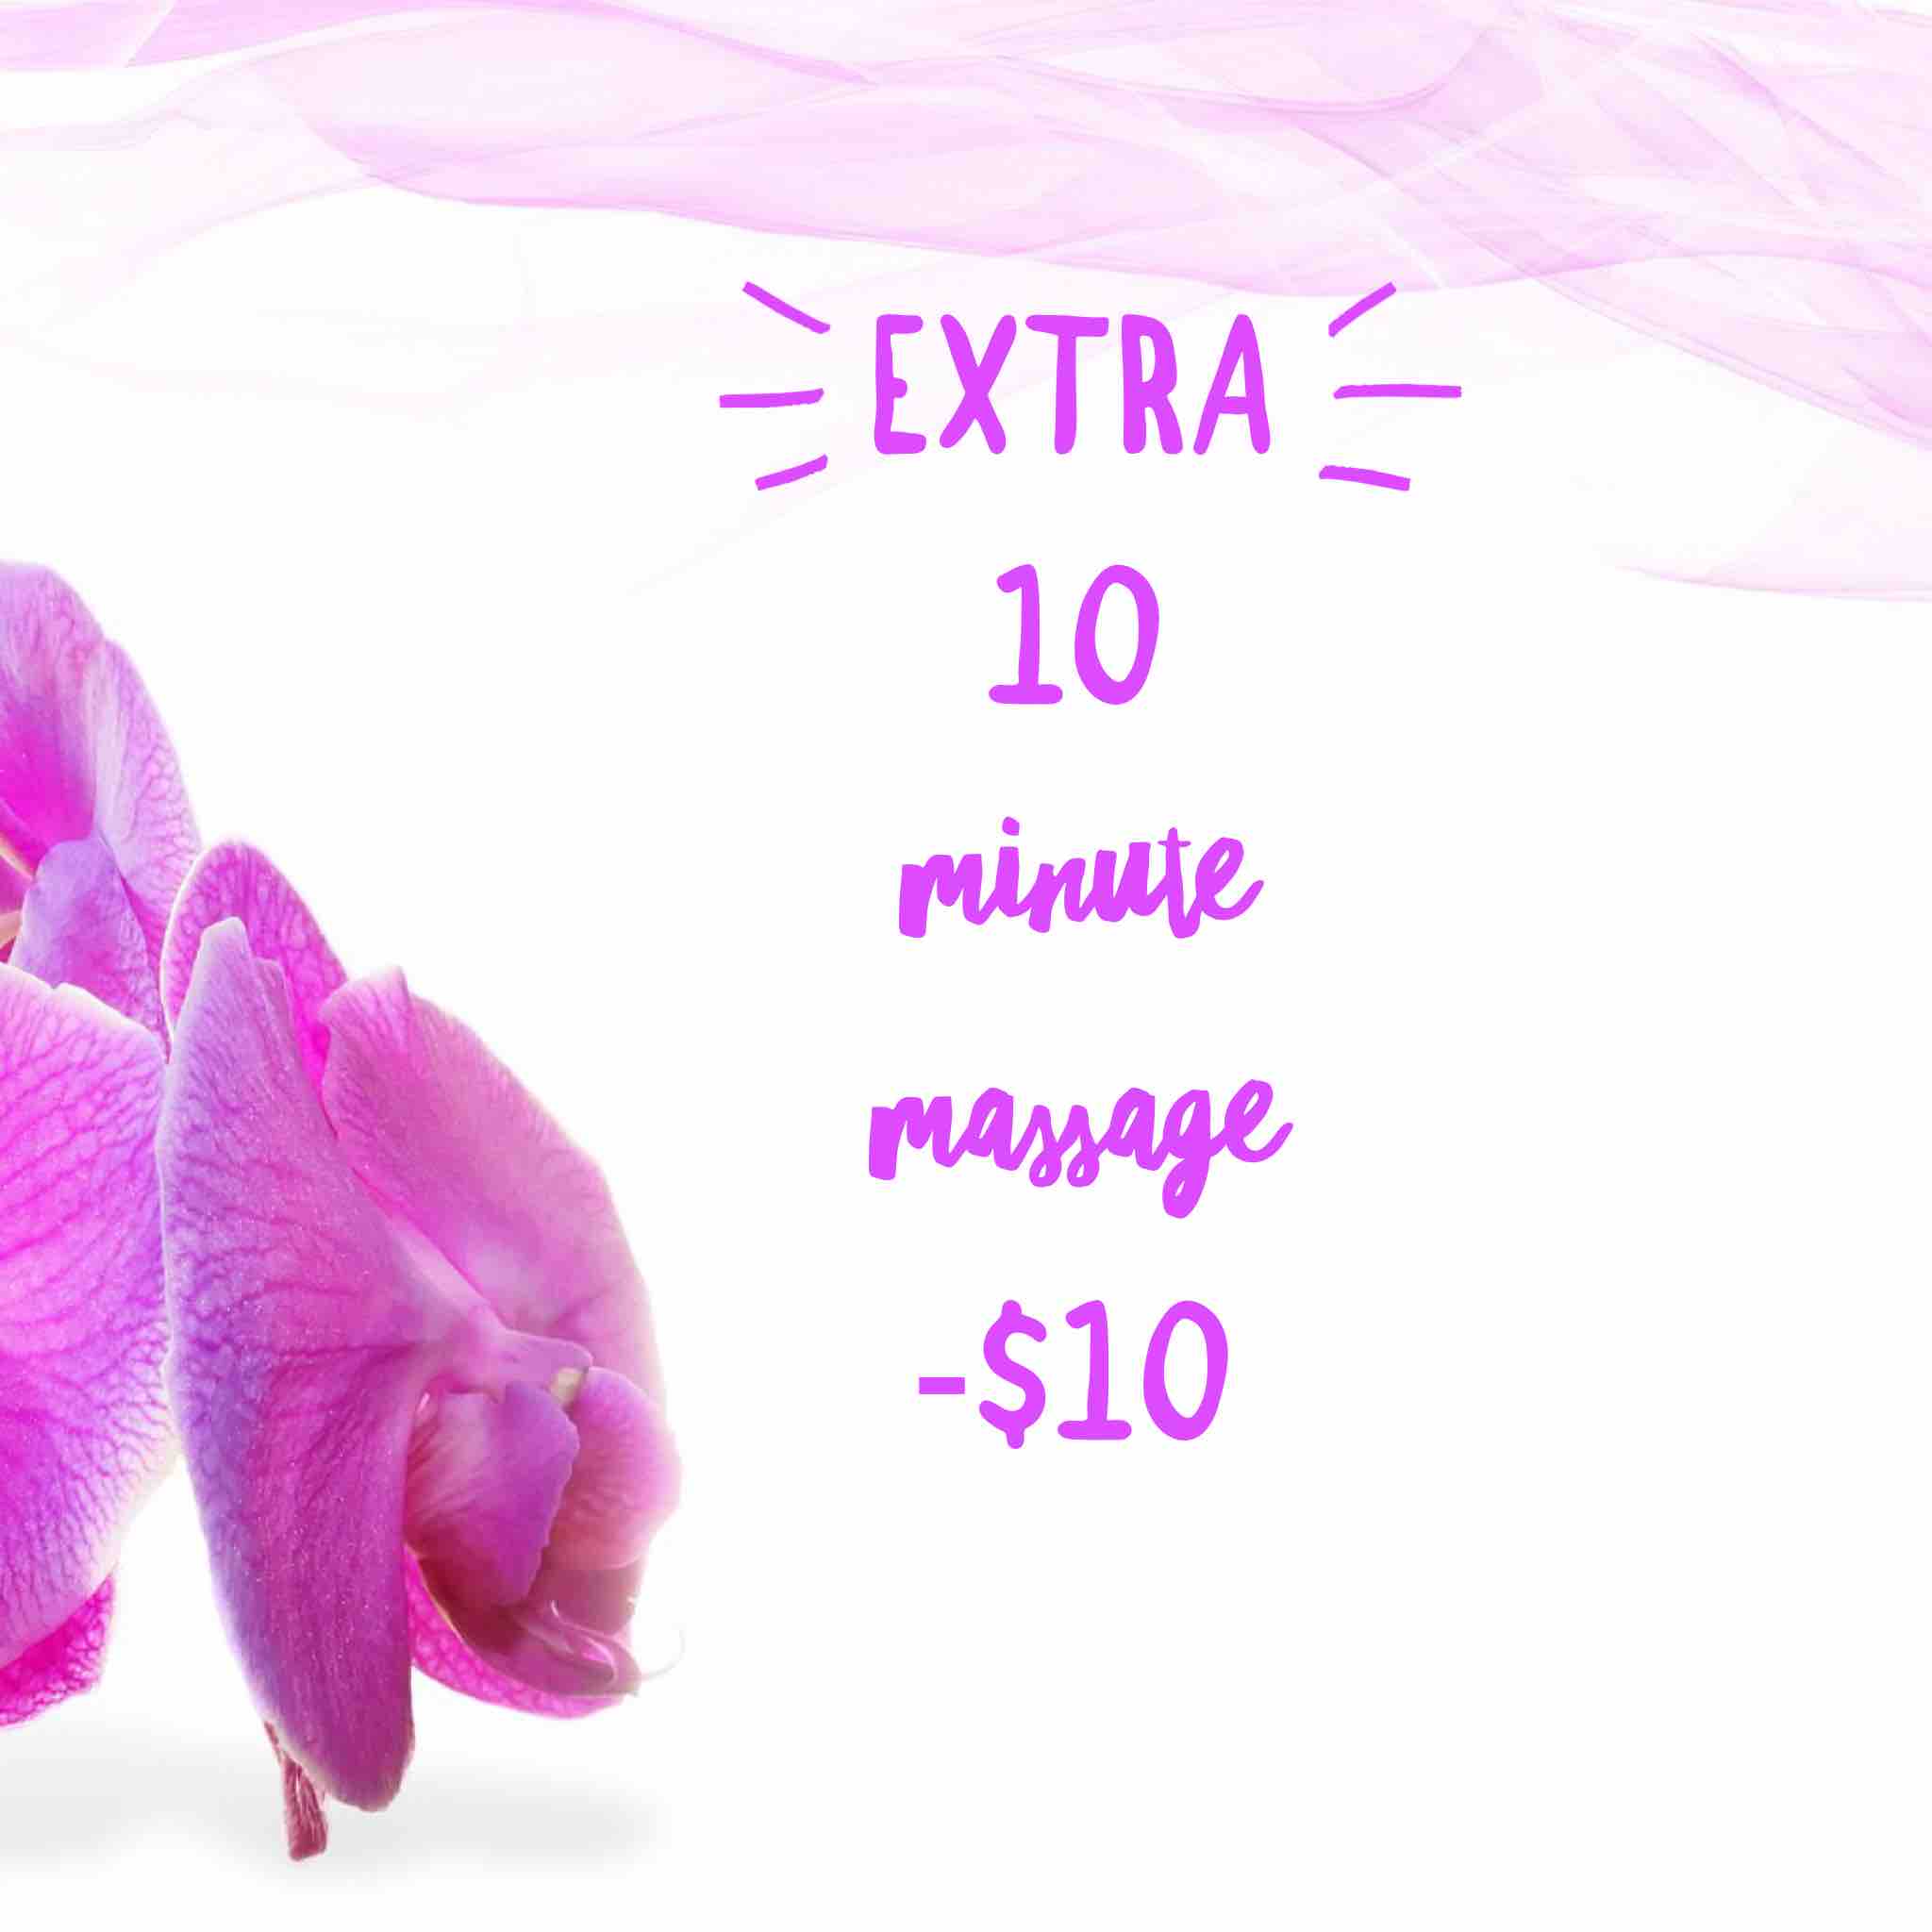 Extra 10 Minute Massage